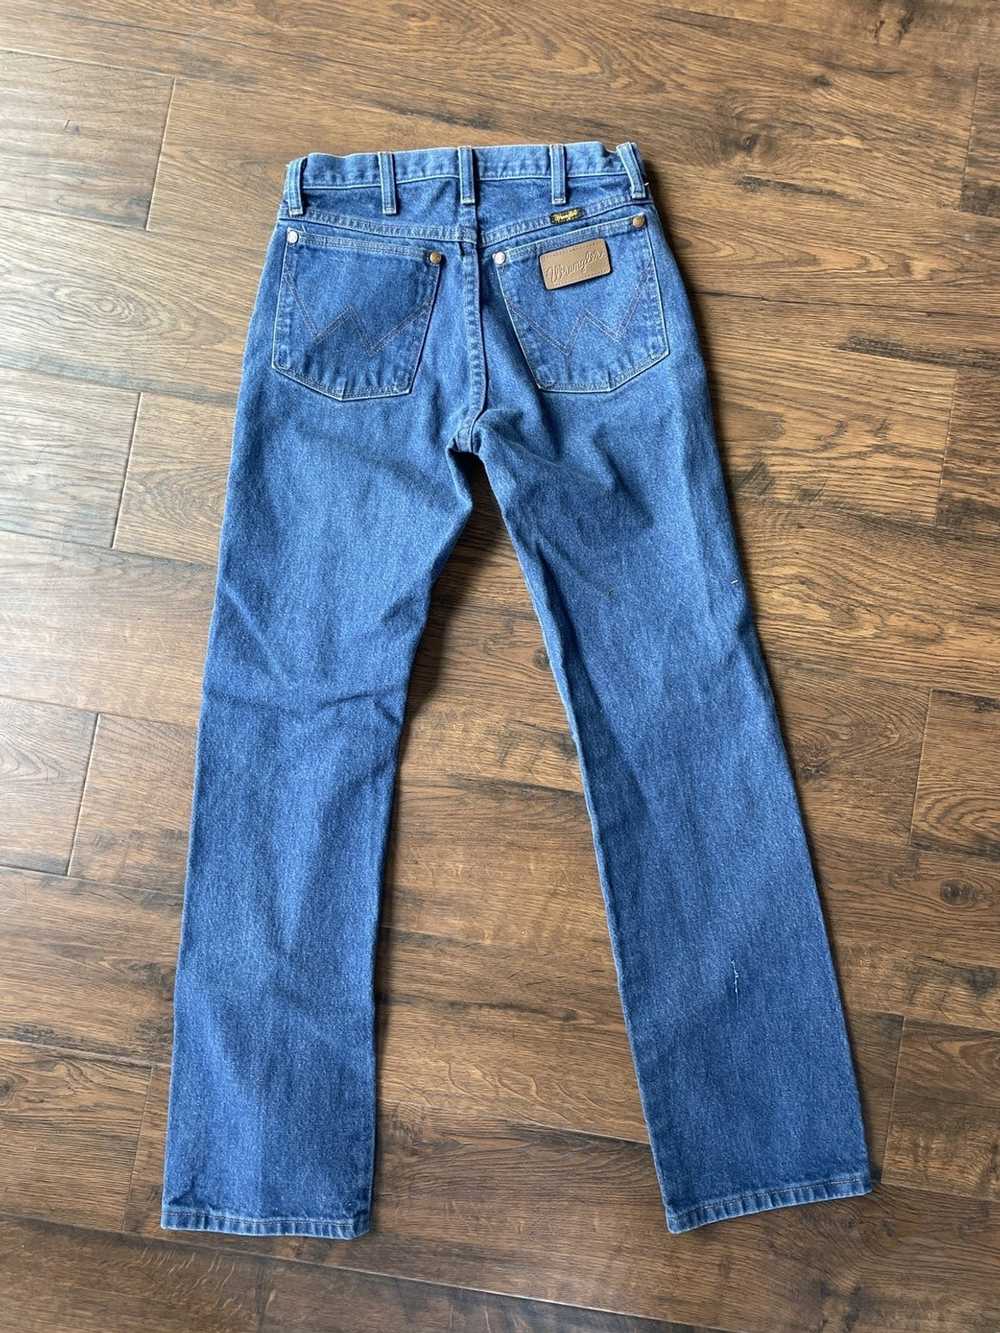 Wrangler wrangler jeans - image 4